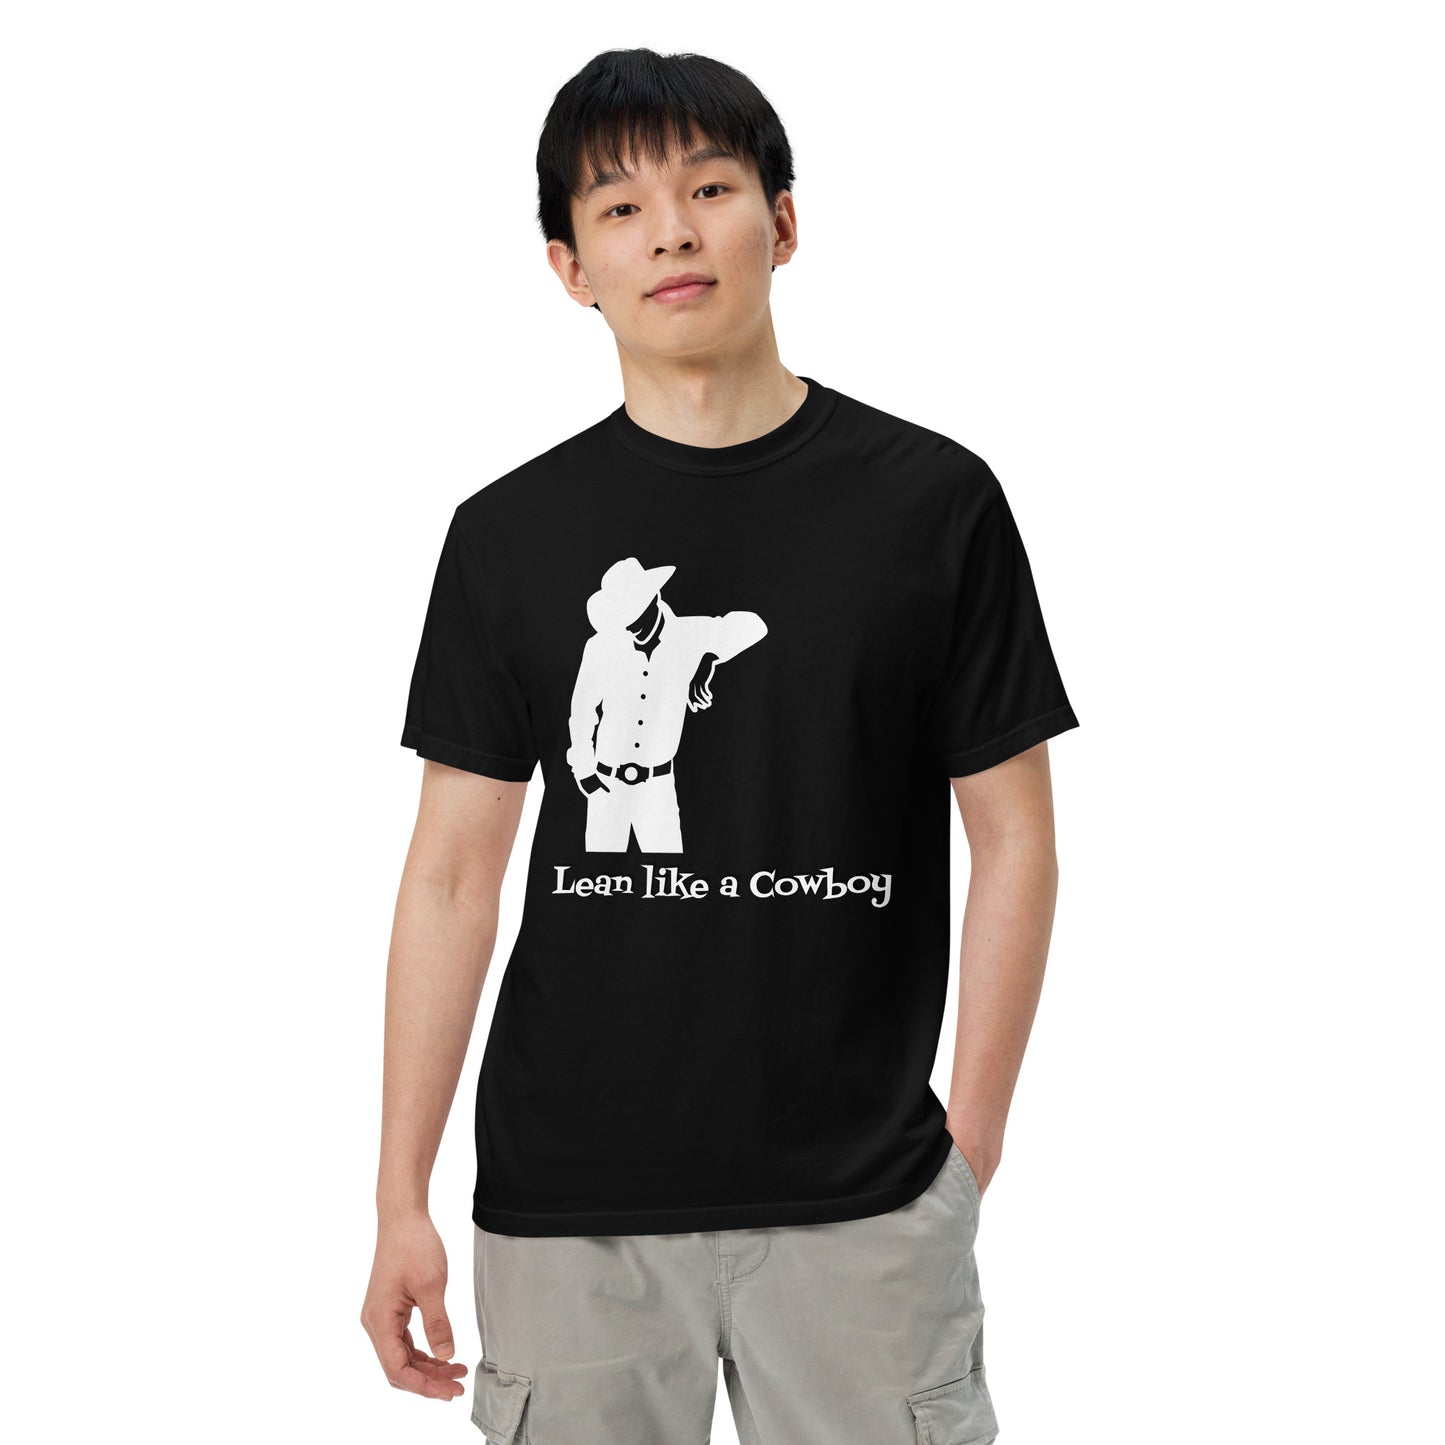 Lean like a Cowboy by Irma Unisex garment-dyed heavyweight t-shirt